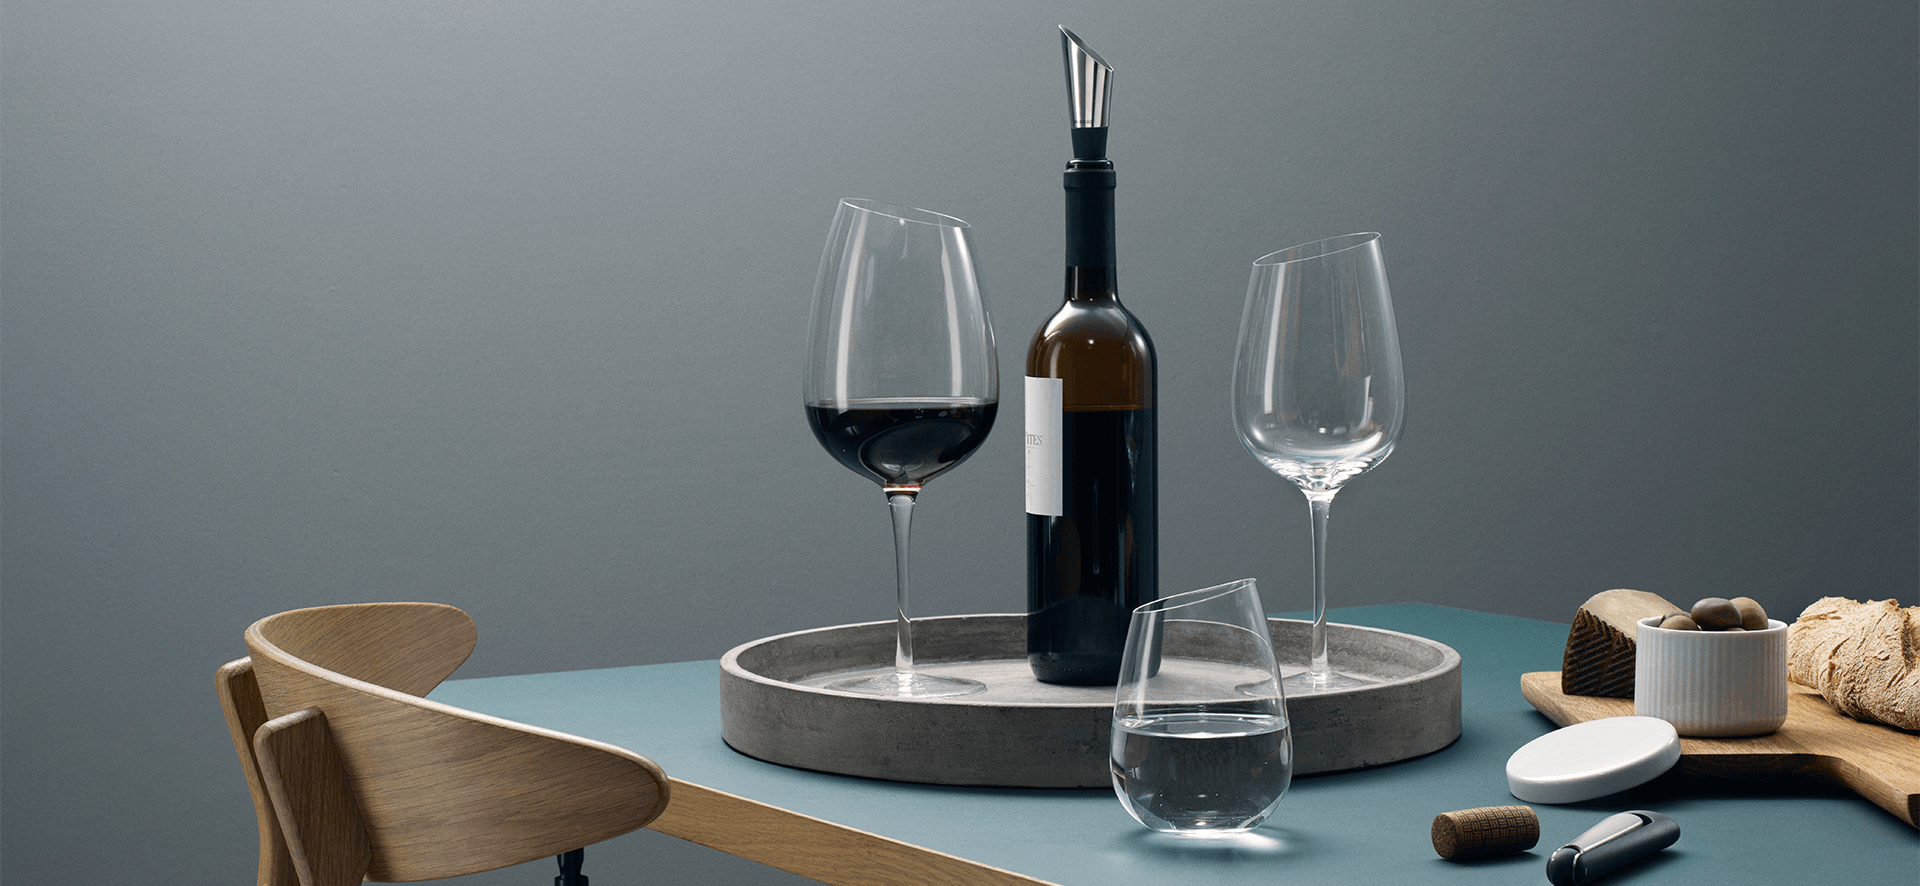 Eva Solo MAGNUM Weinglas Rotweinglas mundgeblasen Limitiert 90 cl - HomeDesign Knaus wir schaffen Inspirationen 